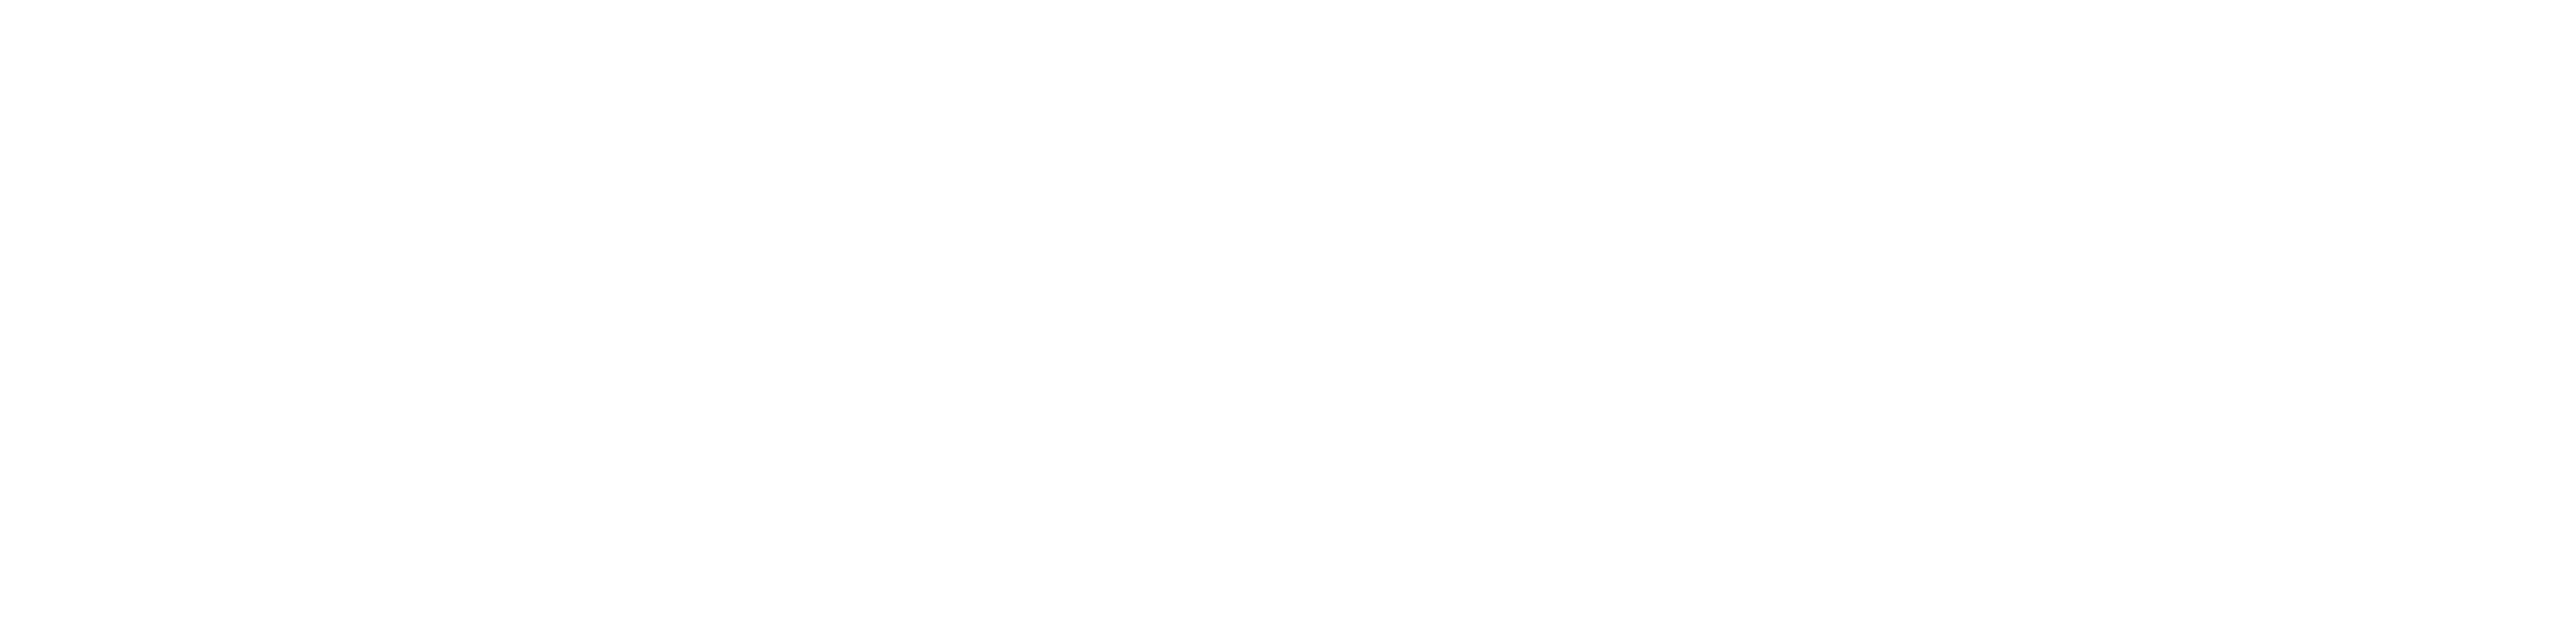 FASTR Logo - White